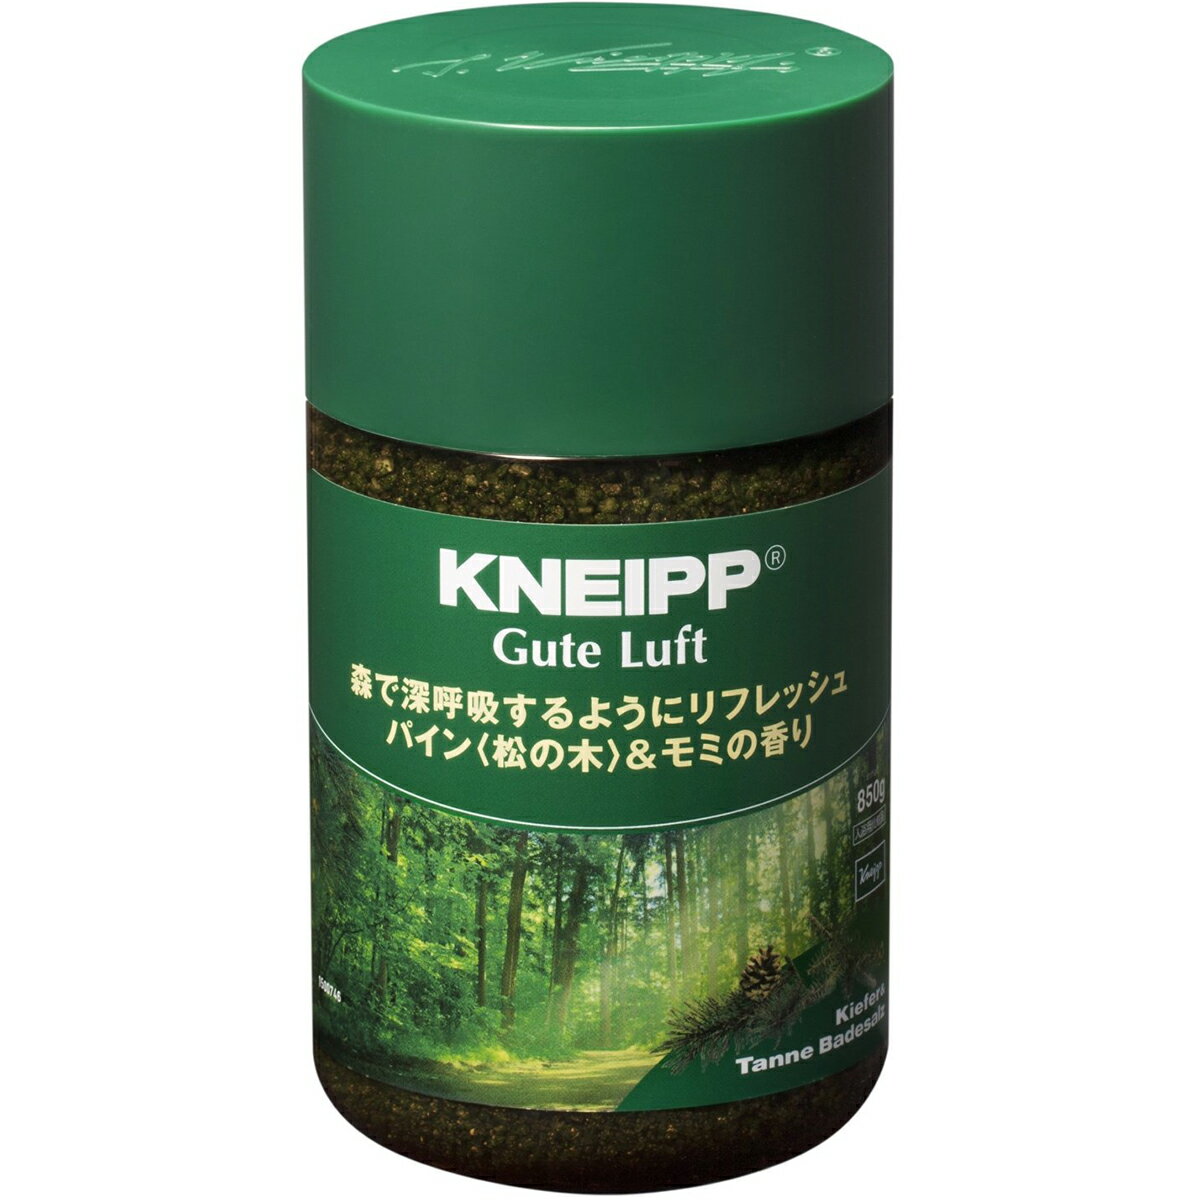 株式会社クナイプジャパン　クナイプ グーテルフト パイン(松の木)&モミの香り 850g